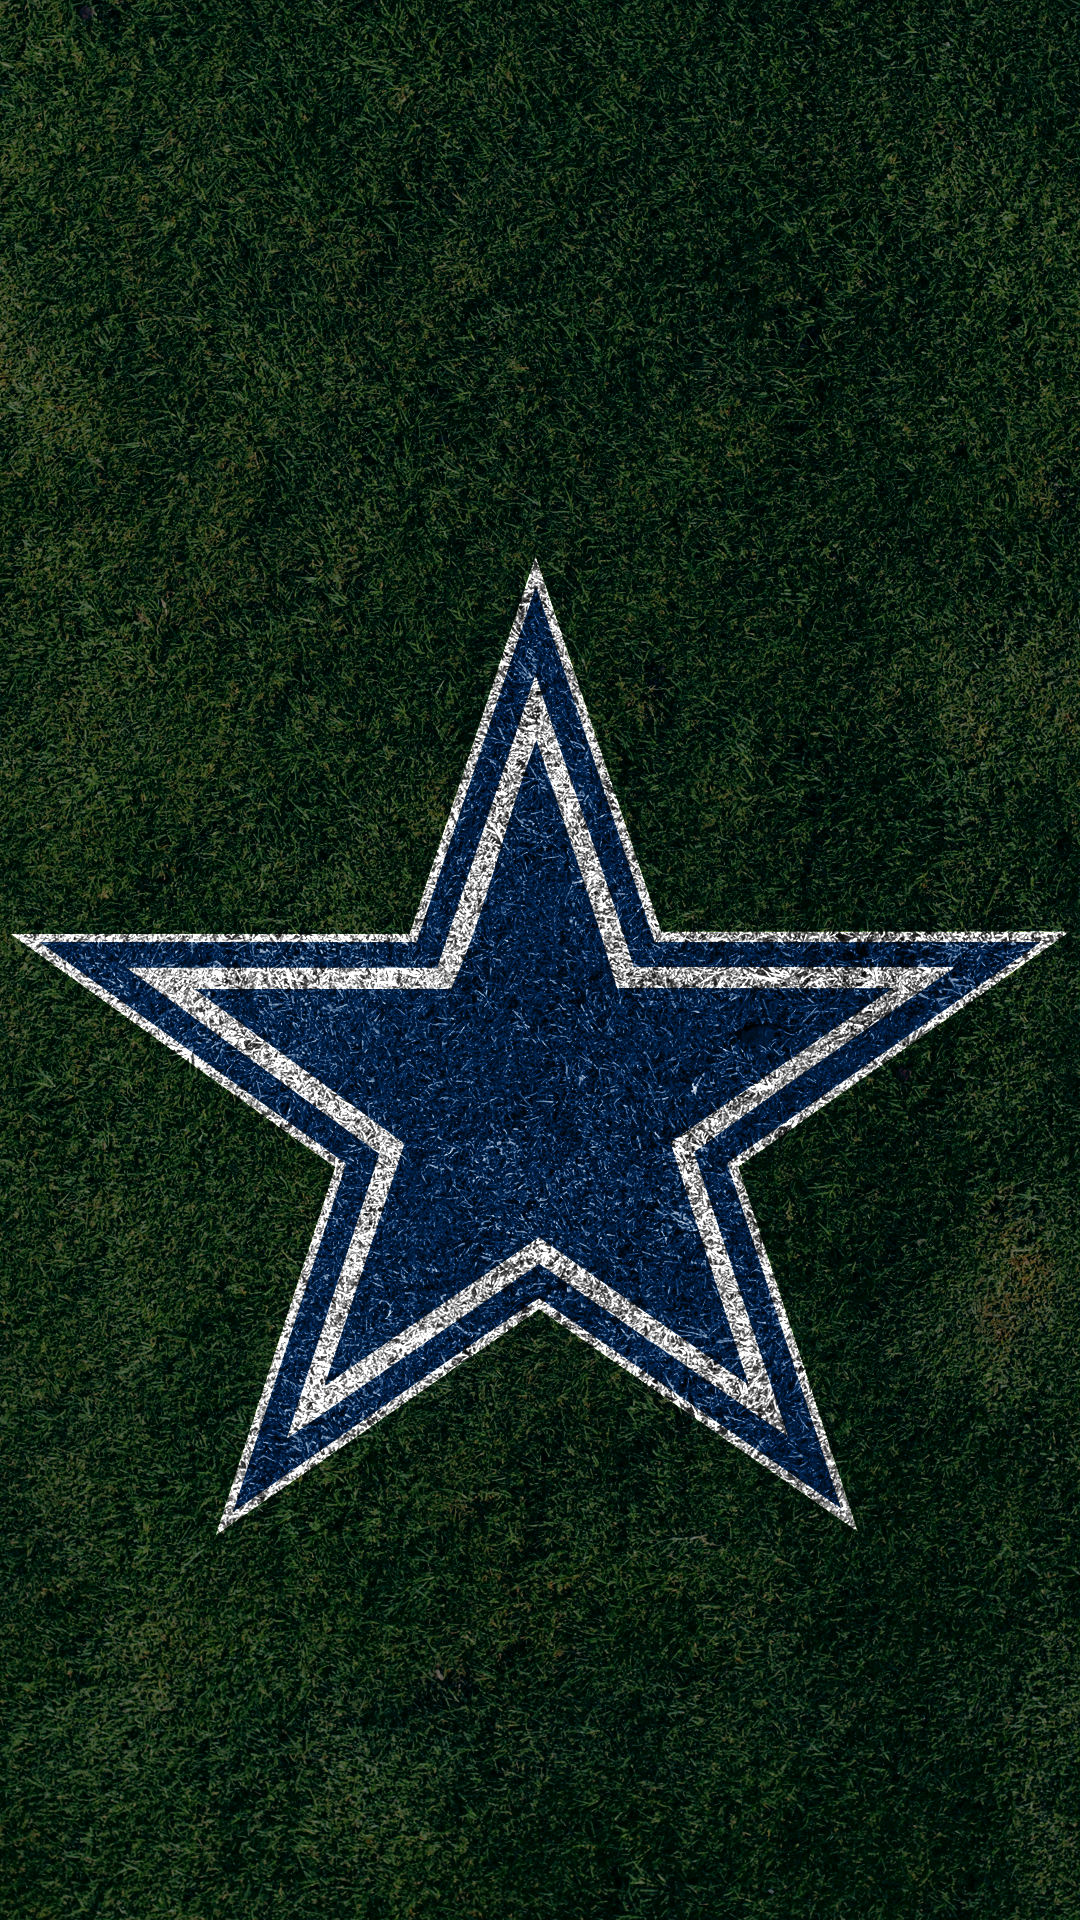 Dallas Cowboys Wallpaper Gallery Image